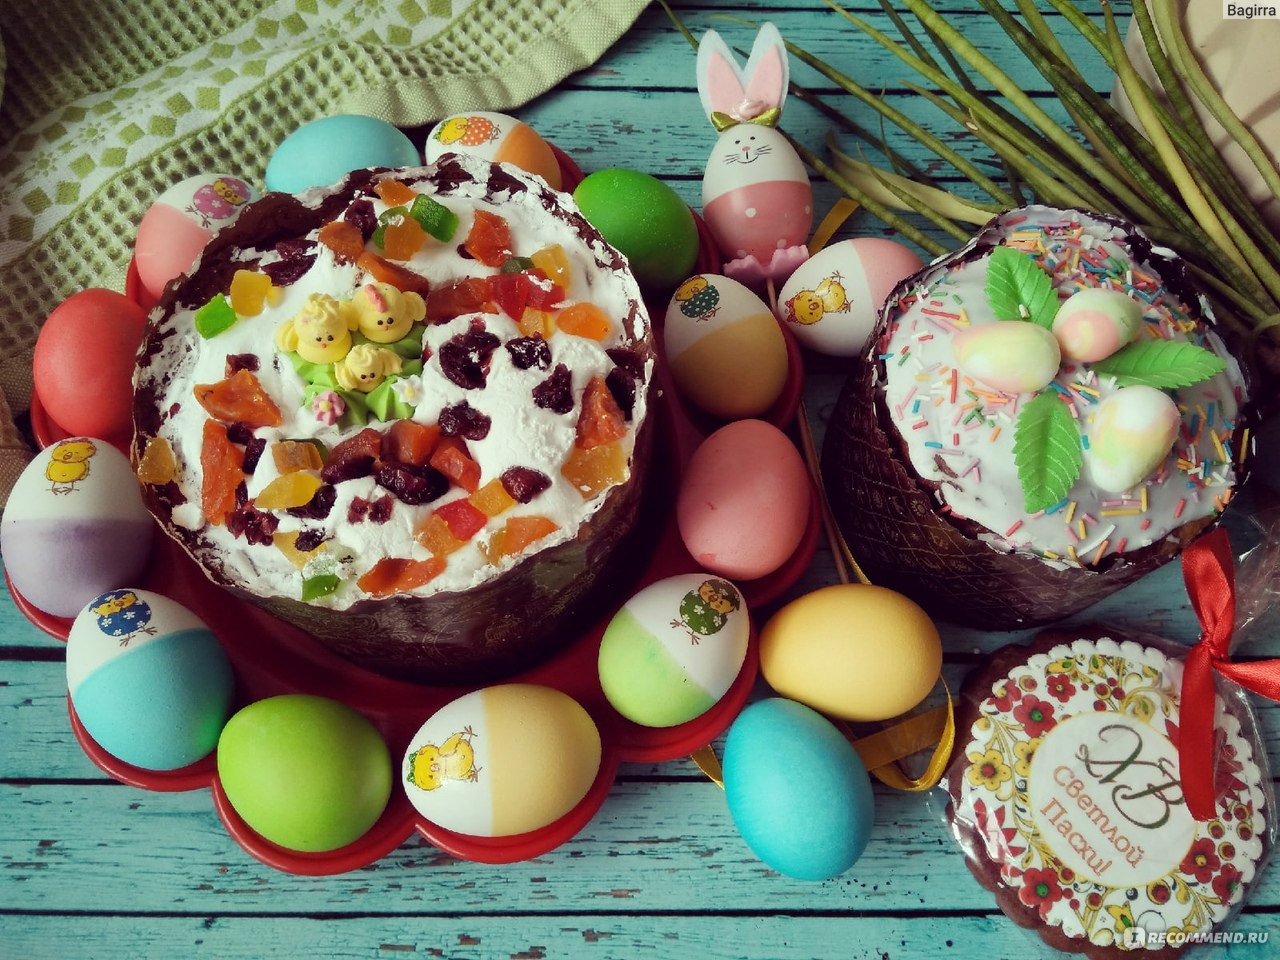 В центрах немецкой культуры и российско-немецких домах по всей стране отметили праздник Пасхи